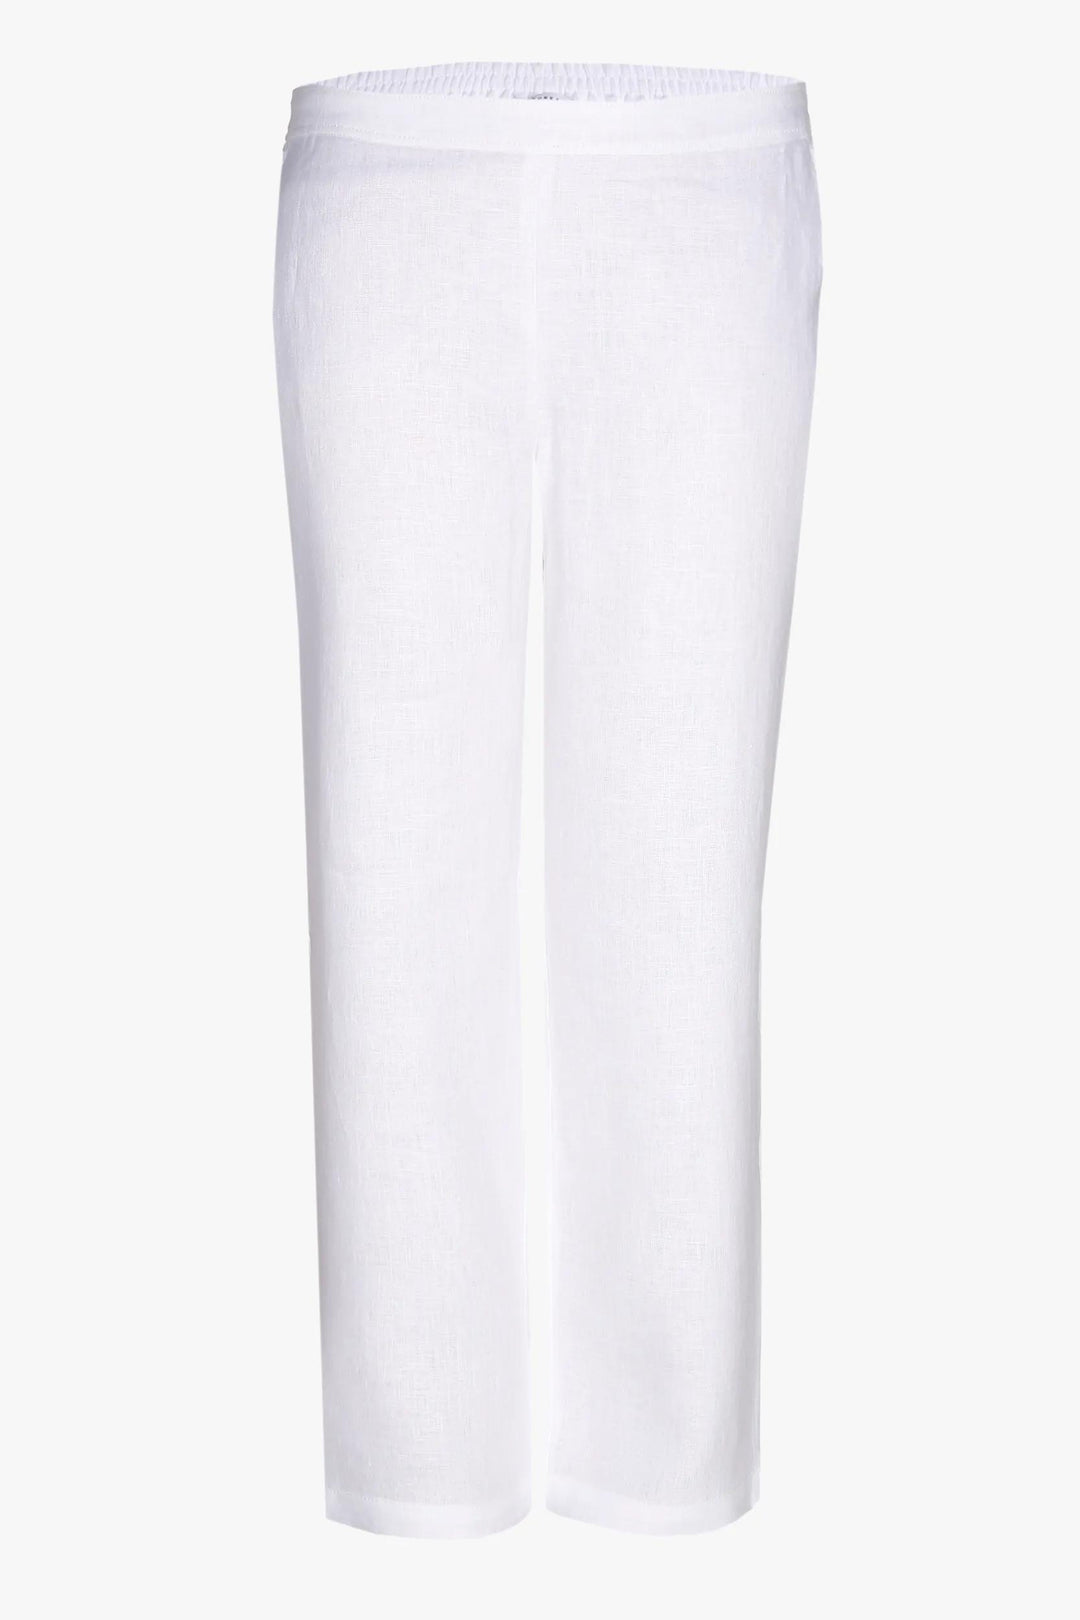 witte linnen broek - xandres - - grote maten - dameskleding - kledingwinkel - herent - leuven